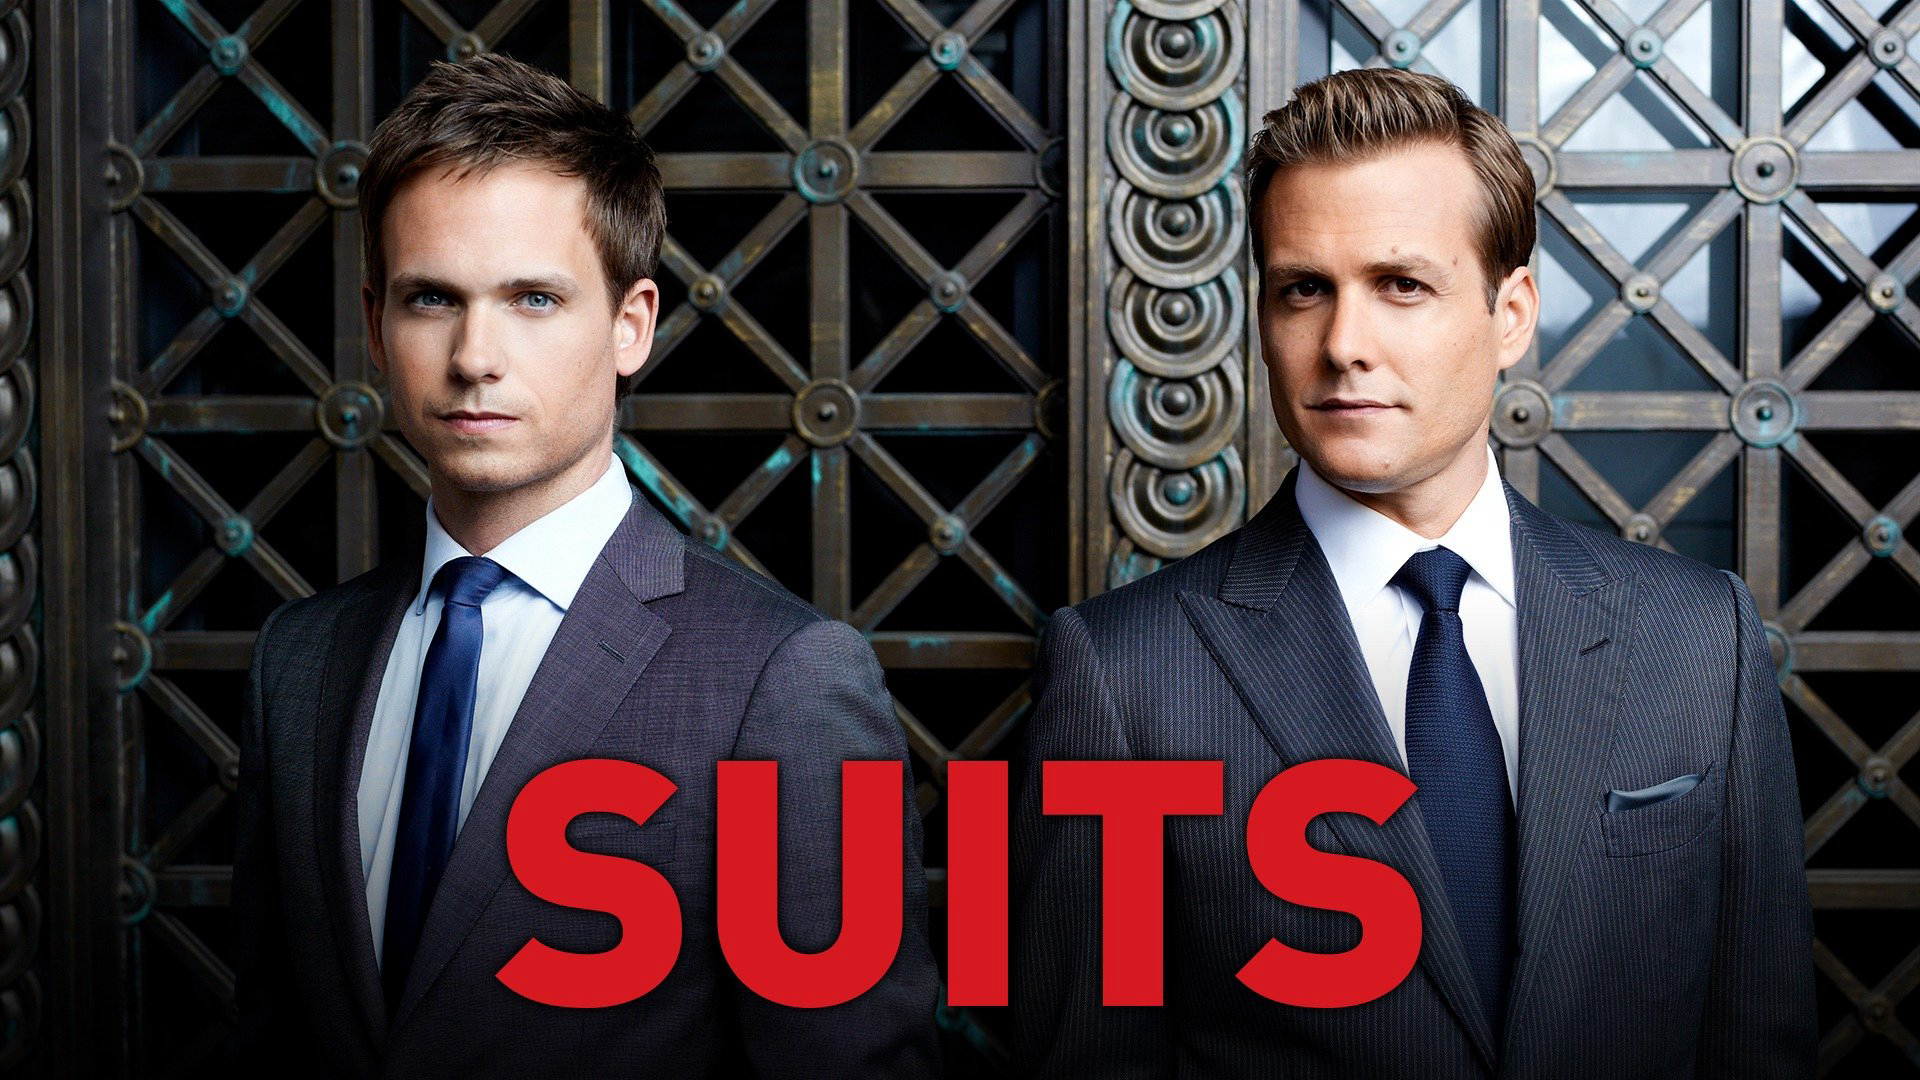 Suits (Season 2) / Suits (Season 2) (2012)